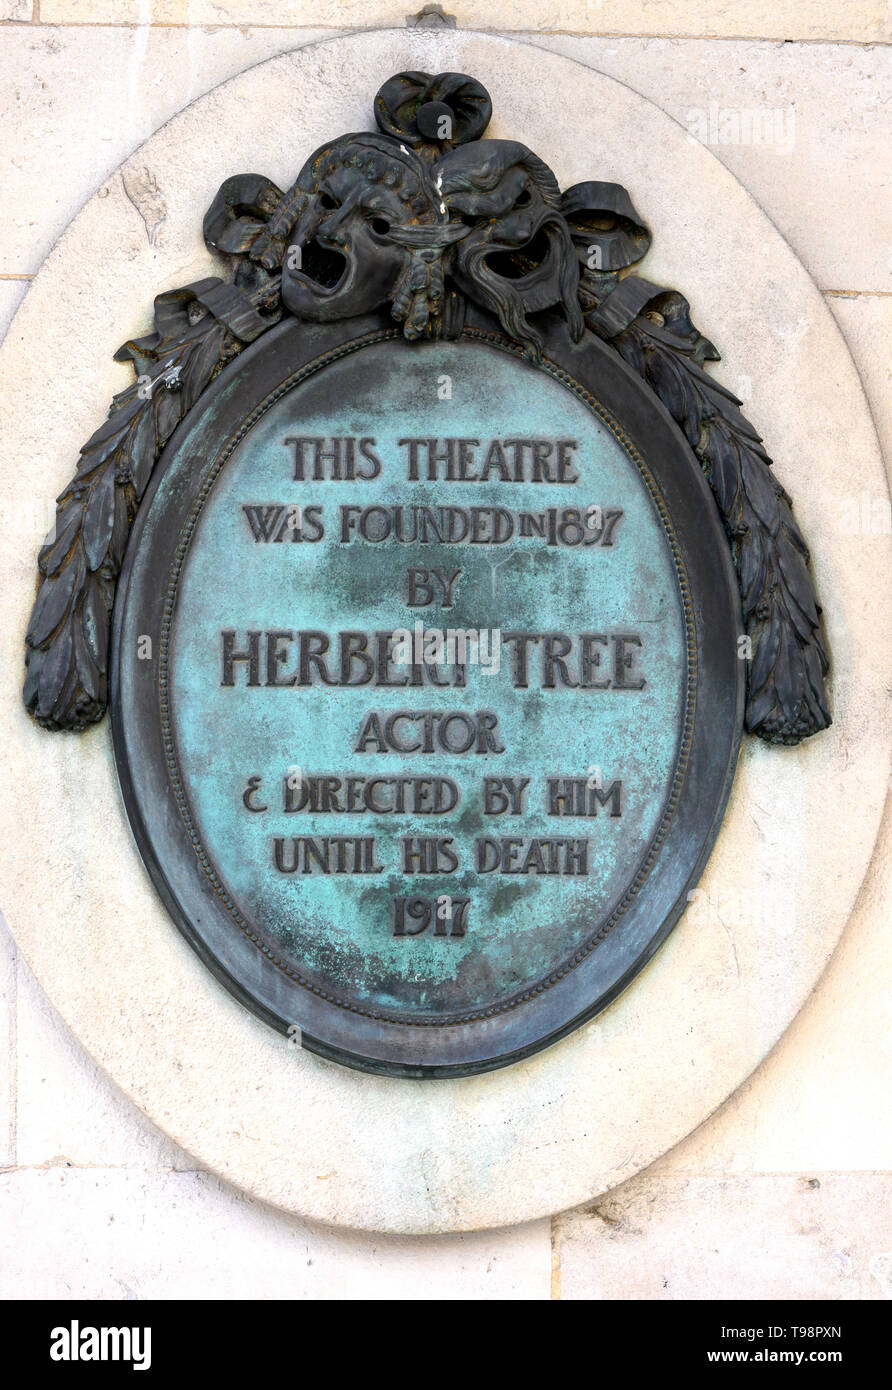 Plaque du patrimoine en commémoration de Herbert Tree à Her Majesty's Theatre, Haymarket, Londres, Angleterre, Royaume-Uni Banque D'Images